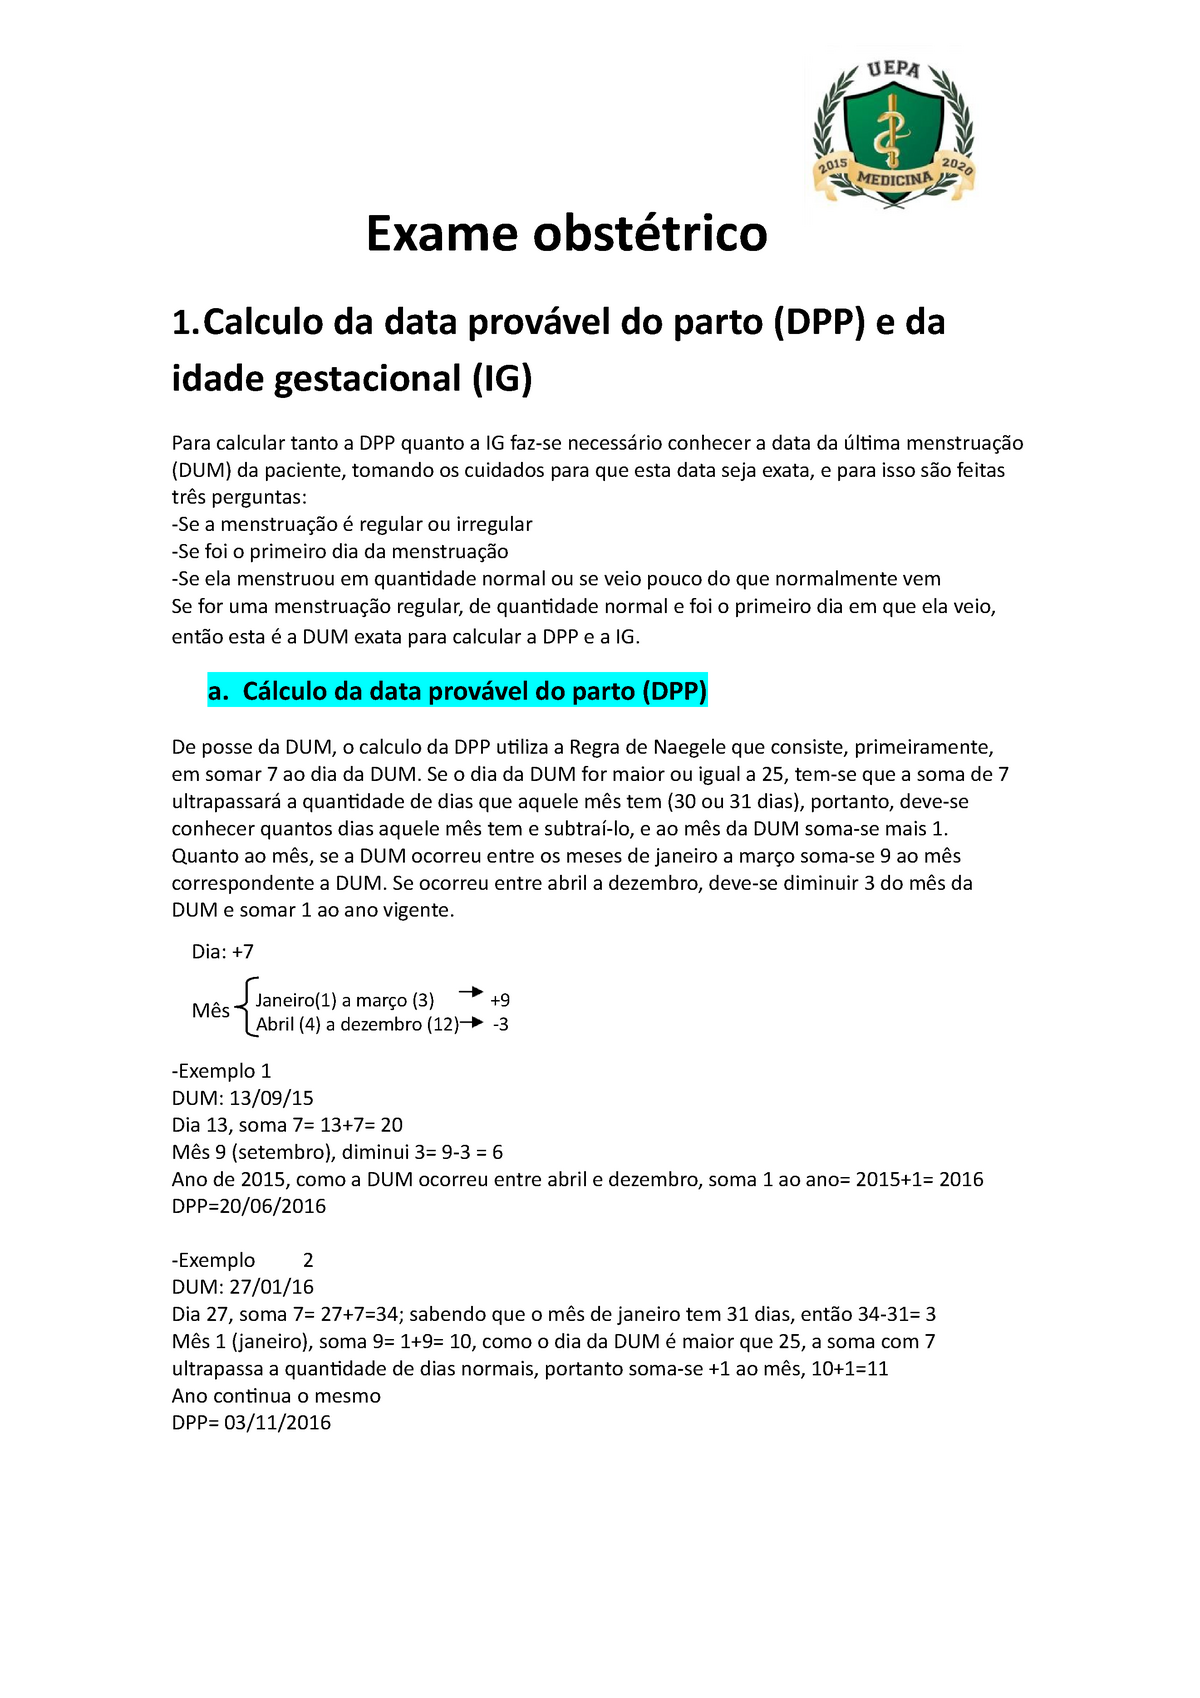 Aprenda a Calcular a Data Provavel do Parto (DPP)